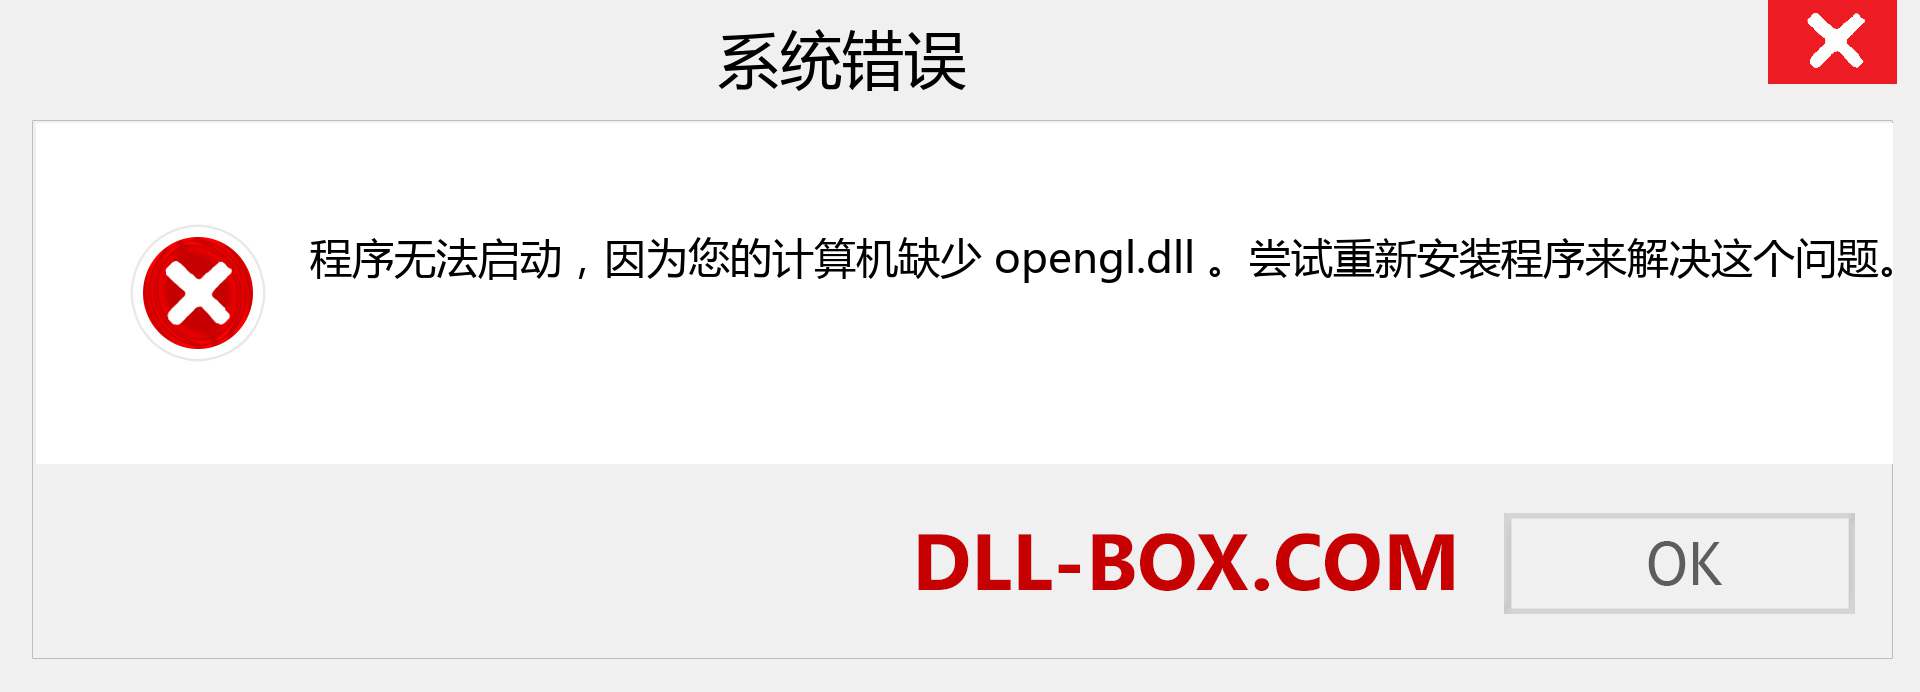 opengl.dll 文件丢失？。 适用于 Windows 7、8、10 的下载 - 修复 Windows、照片、图像上的 opengl dll 丢失错误